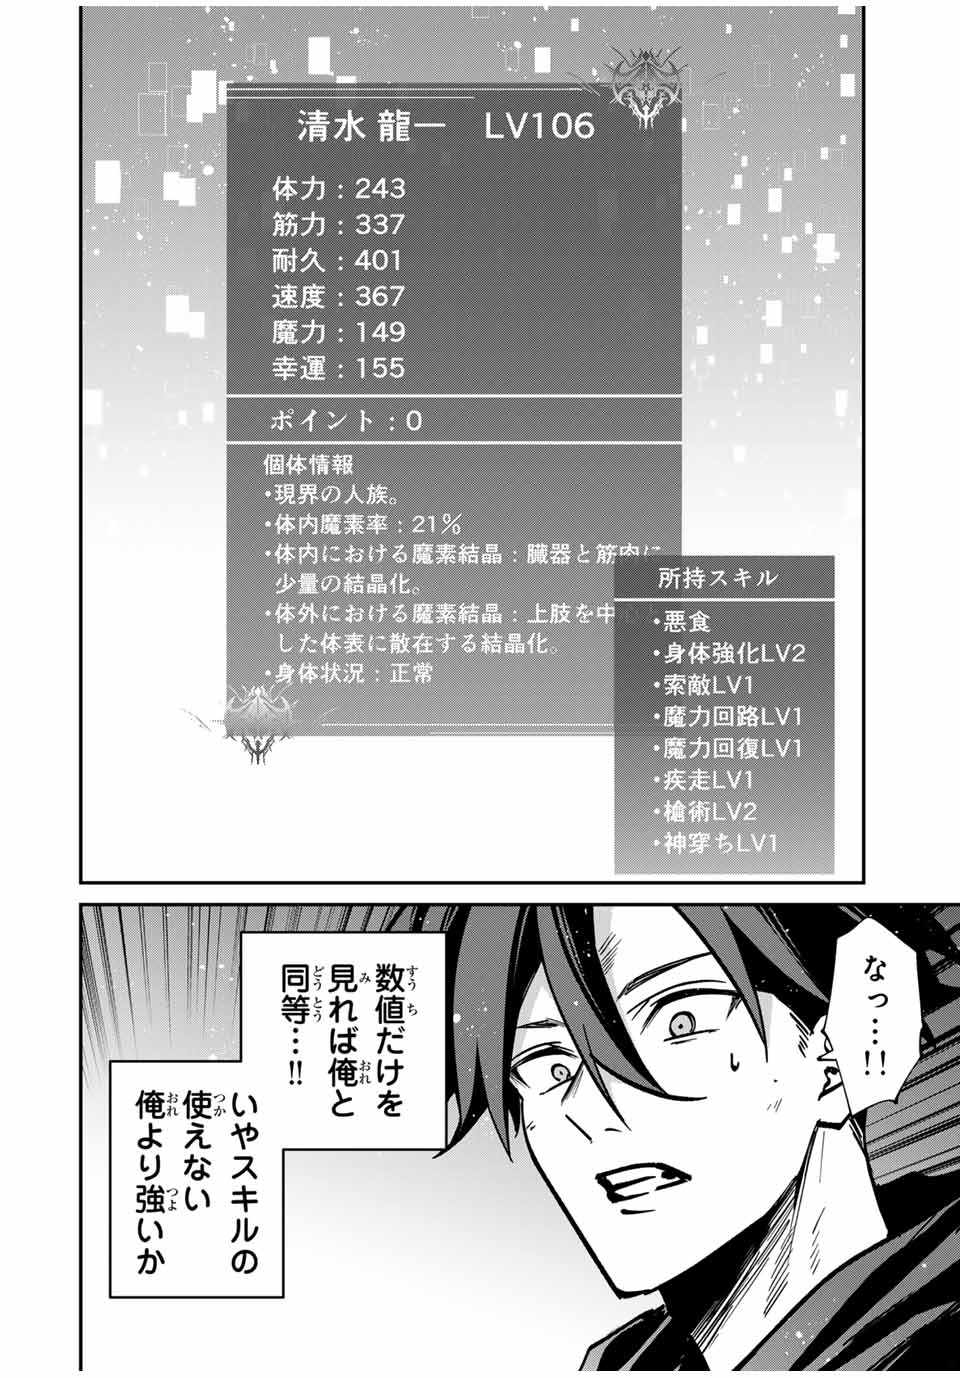 Kono Sekai ga Izure Horobu Koto wo, Ore dake ga Shitte Iru - Chapter 73 - Page 2